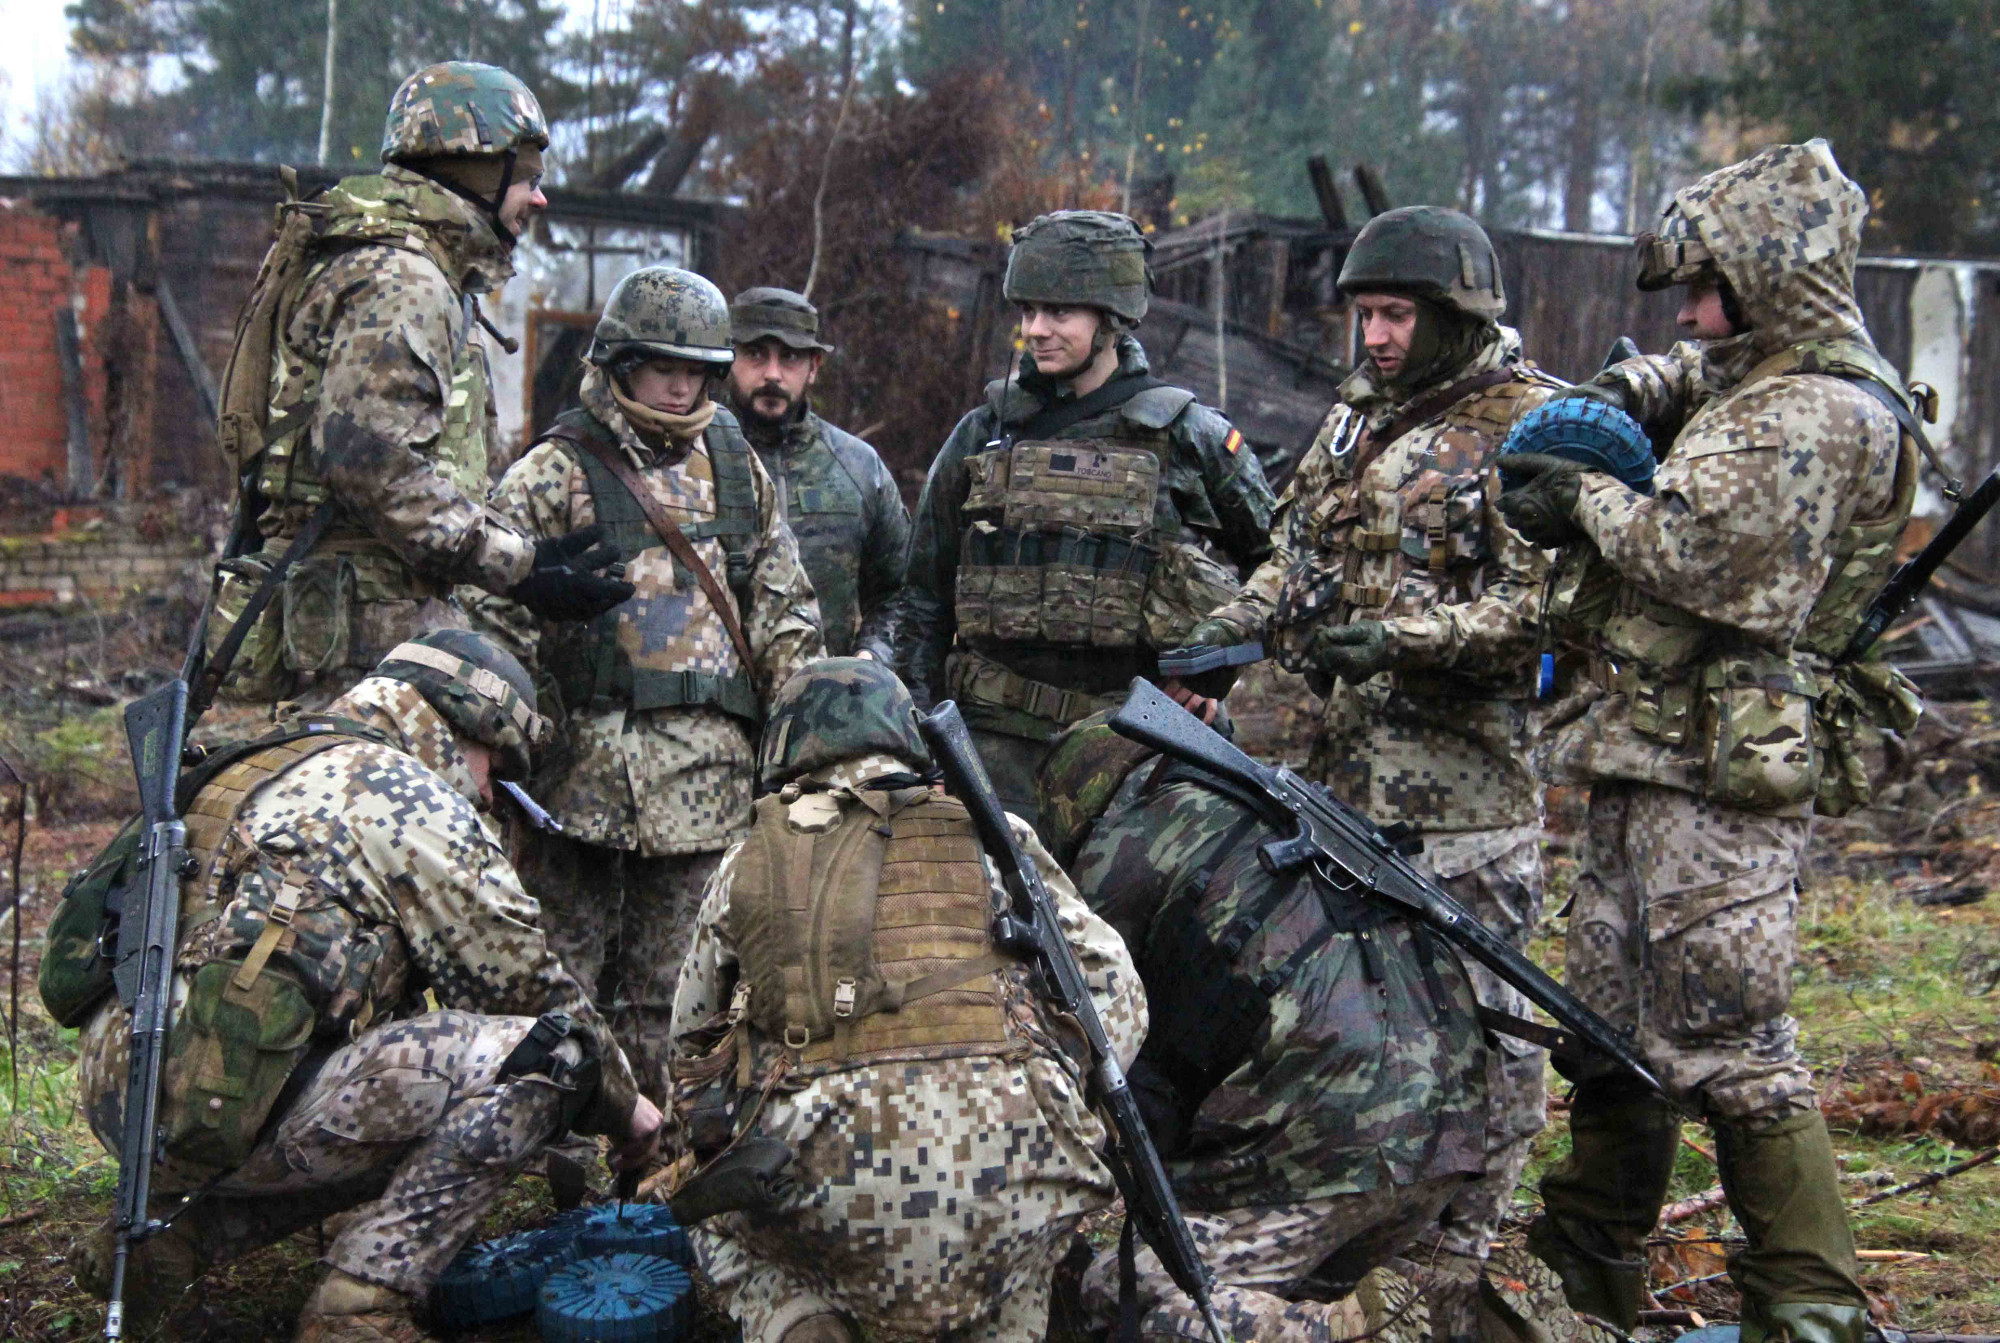 Zapadores españoles participan en un ejercicio multinacional organizado por las Fuerzas Armadas de Letonia